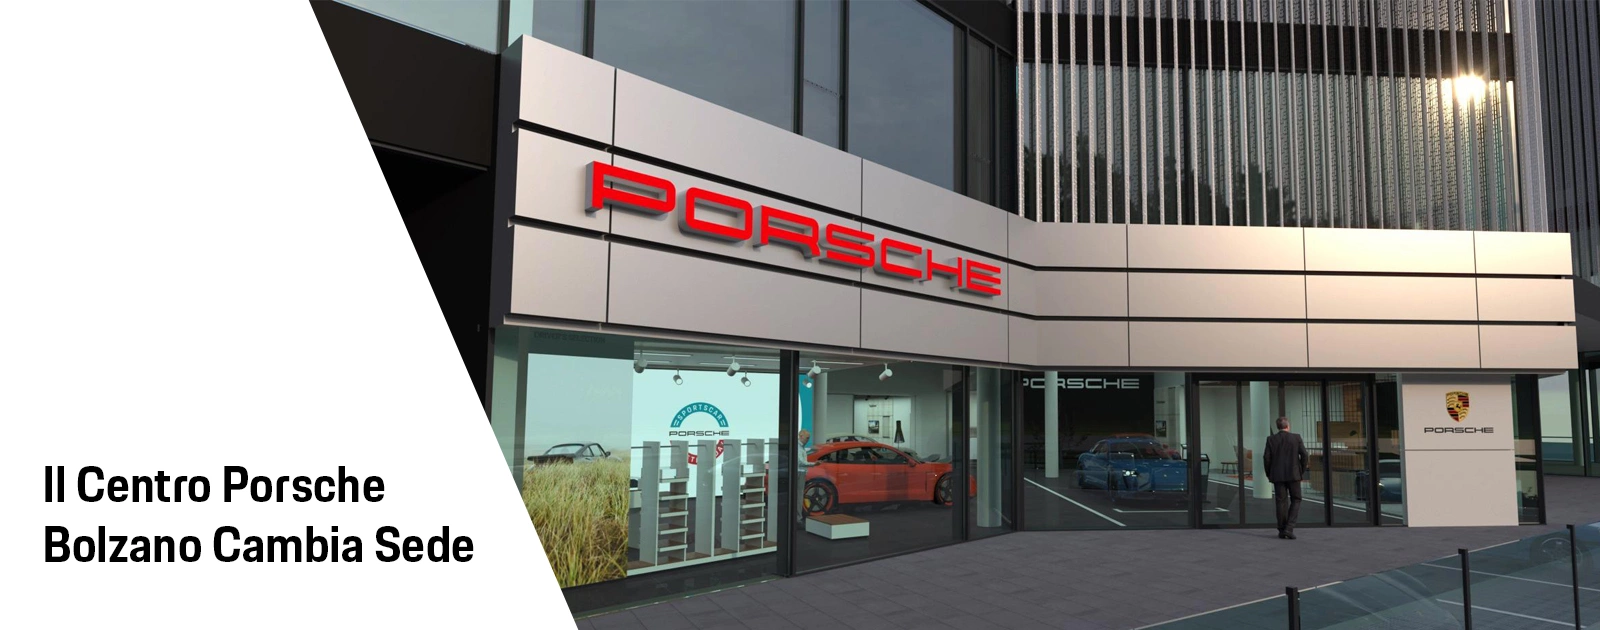 Il Centro Porsche Bolzano Cambia Sede